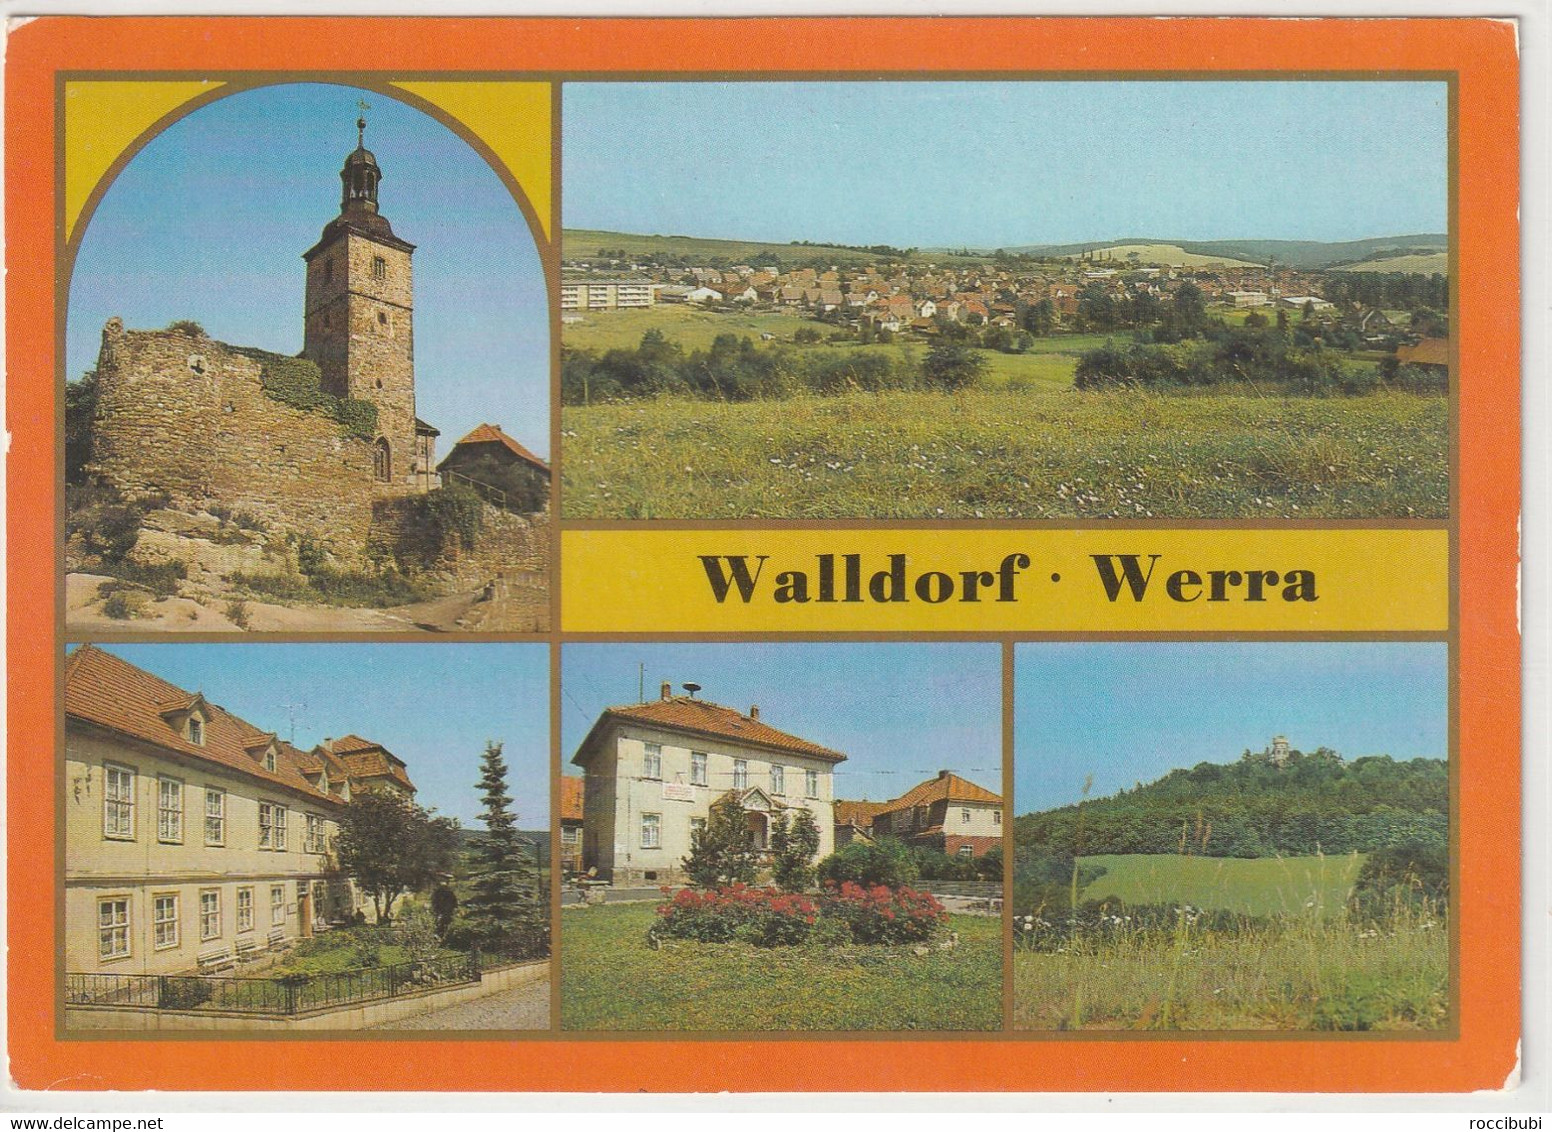 Walldorf, Werra, Meiningen, Thüringen - Meiningen